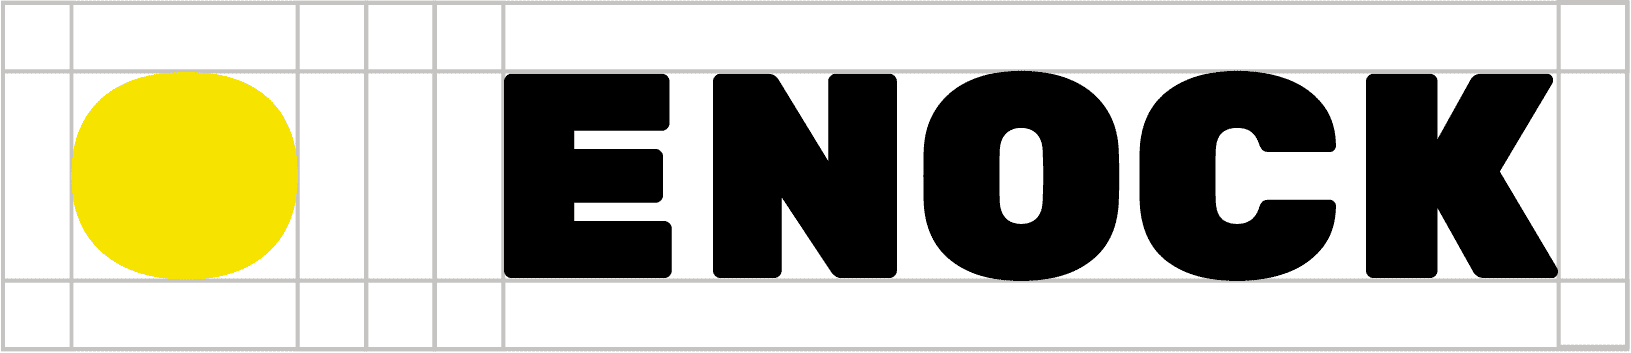 logo Enock avec la grille